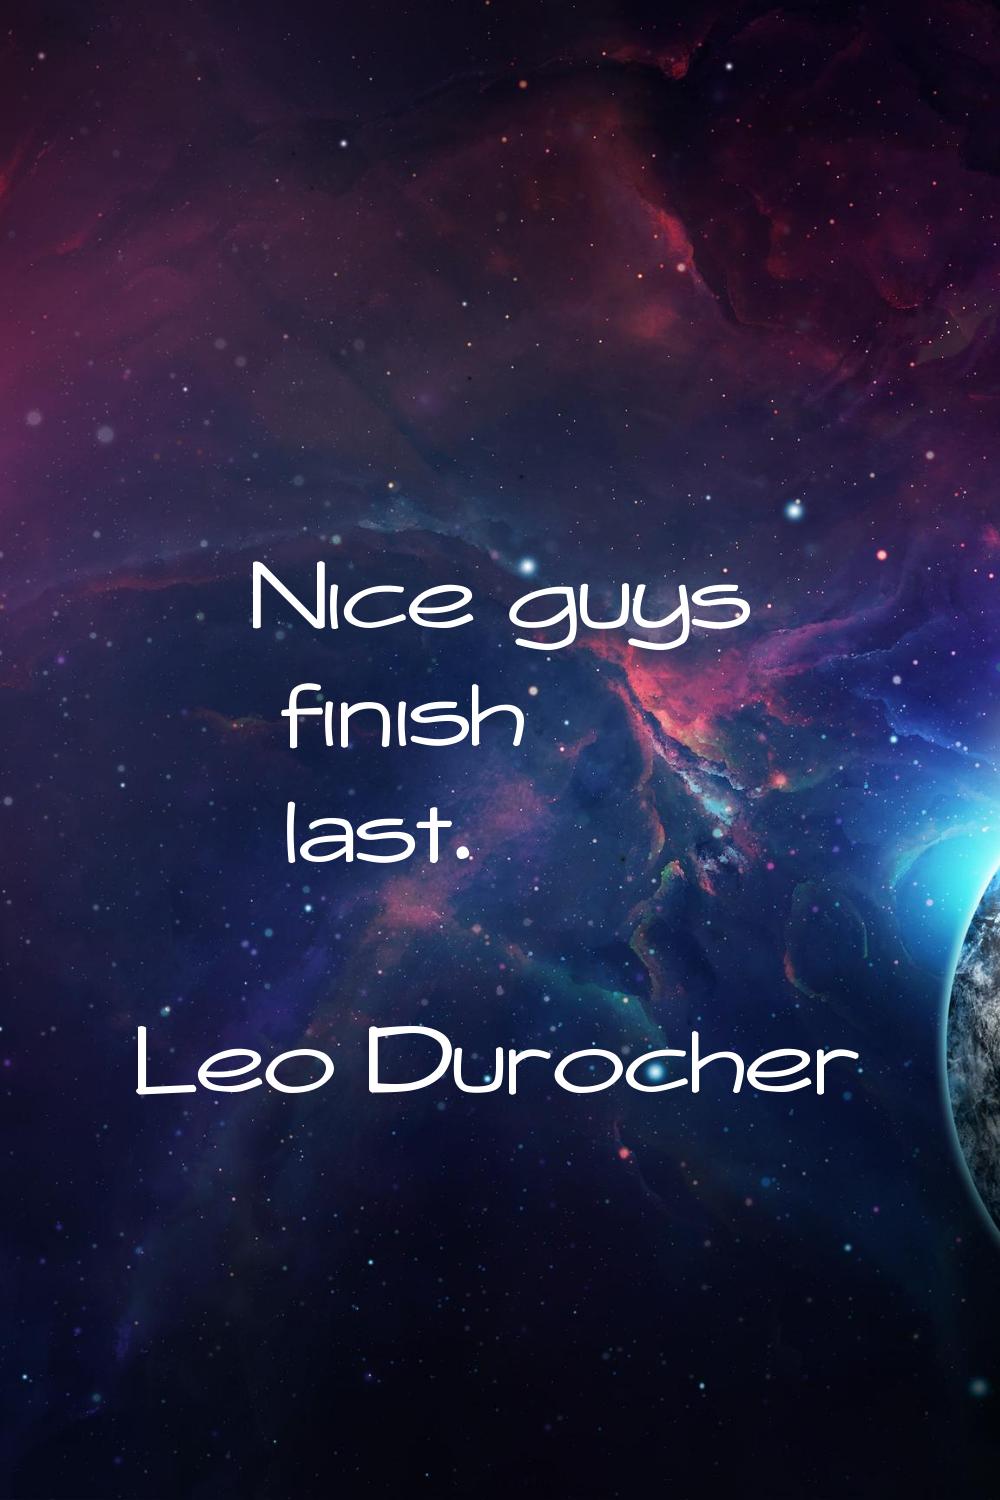 Nice guys finish last.